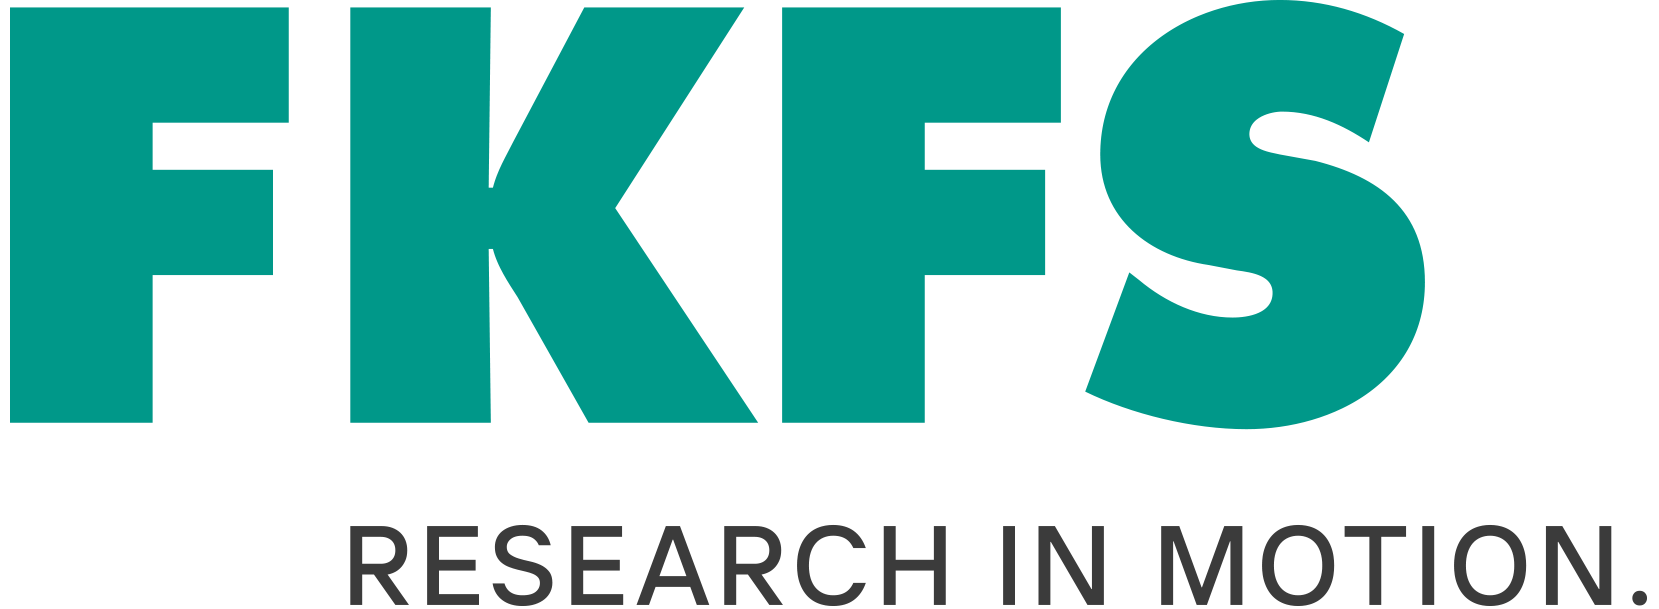 FKFS Conference logo.